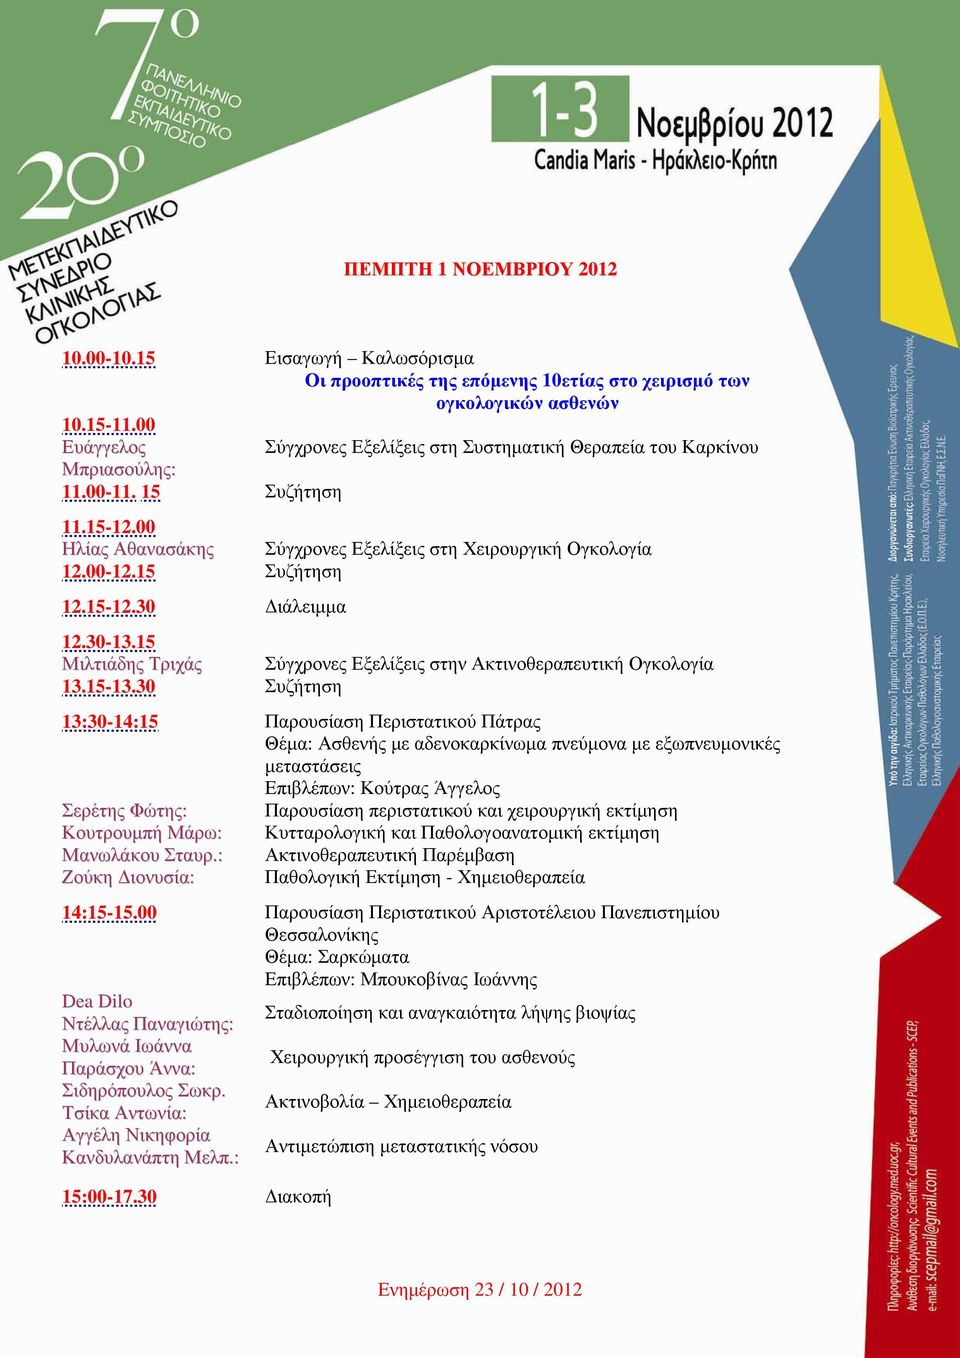 15 Συζήτηση 12.15-12.30 ιάλειµµα 12.30-13.15 Μιλτιάδης Τριχάς Σύγχρονες Εξελίξεις στην Ακτινοθεραπευτική Ογκολογία 13.15-13.